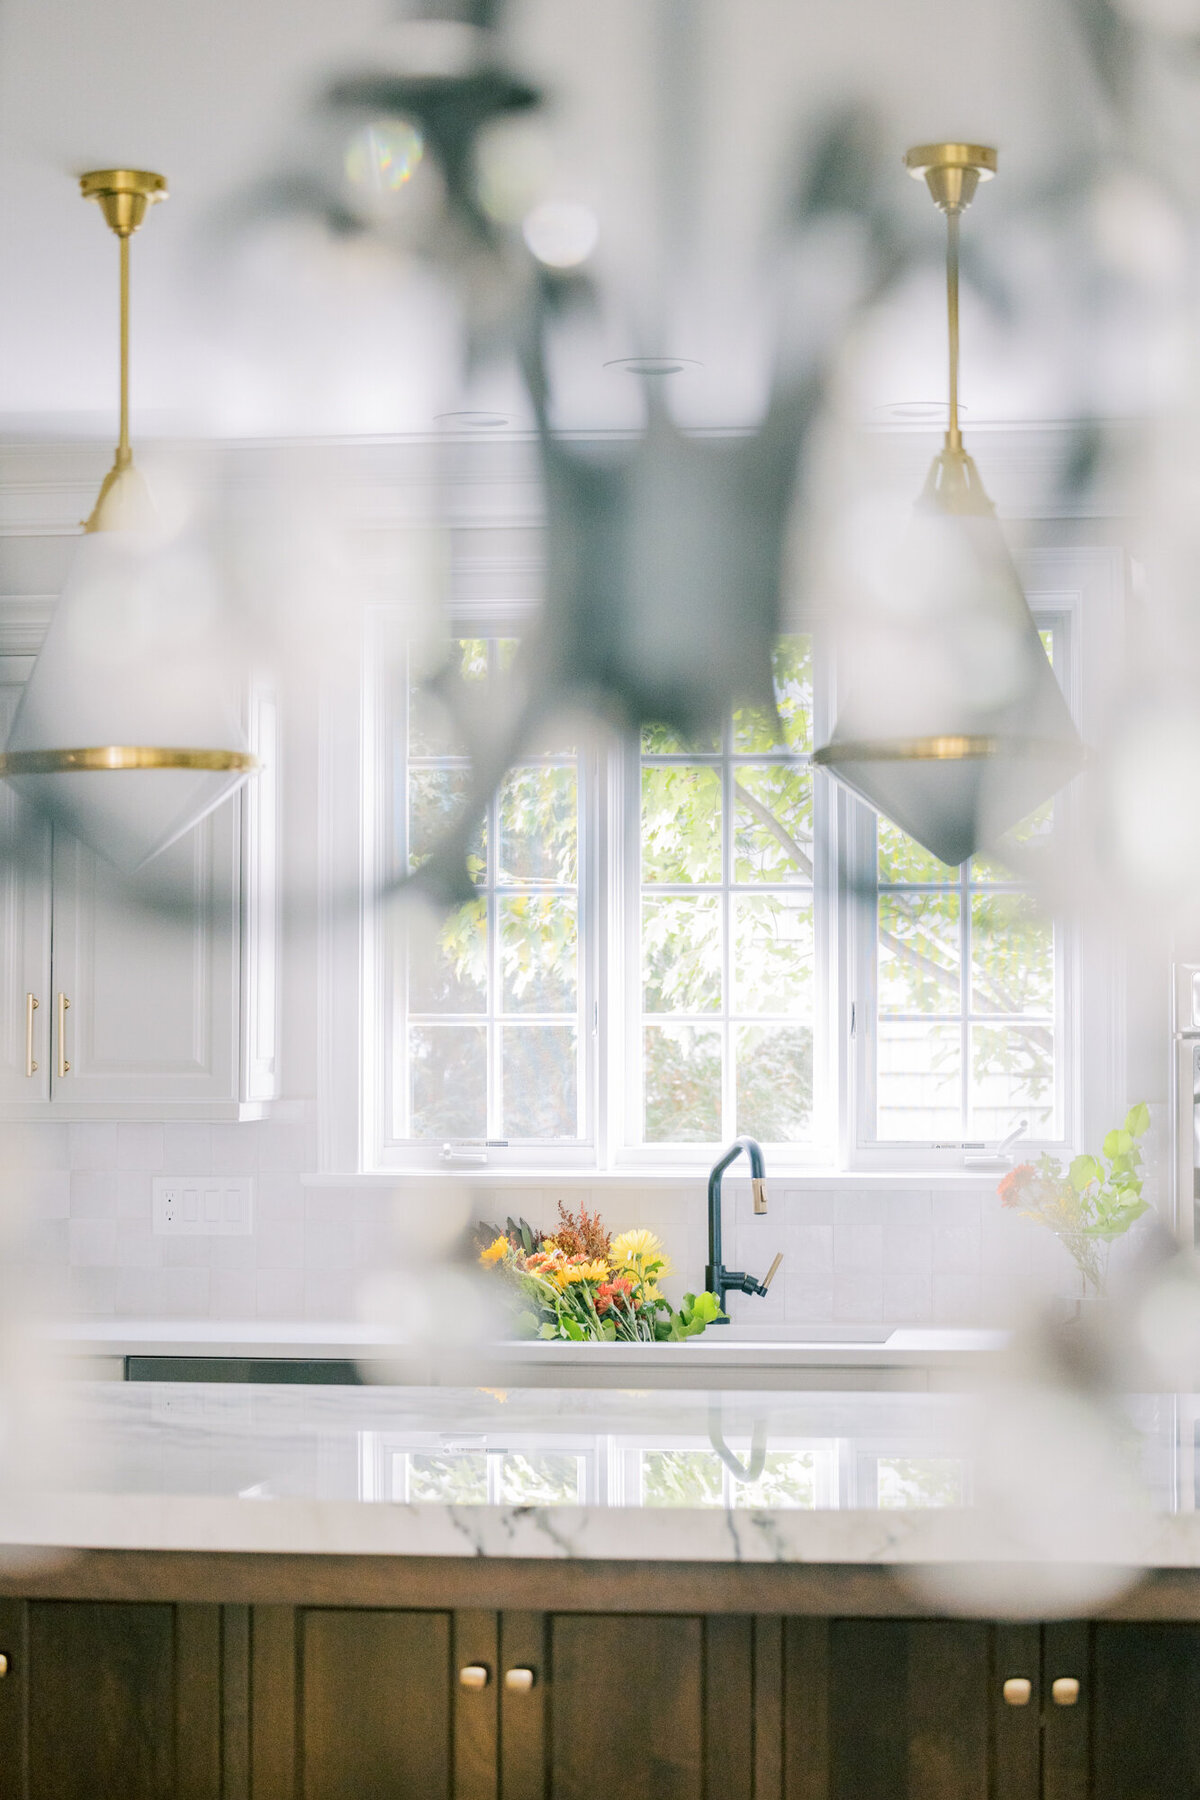 A creative interior design photograph of a kitchen shot through a chandelier